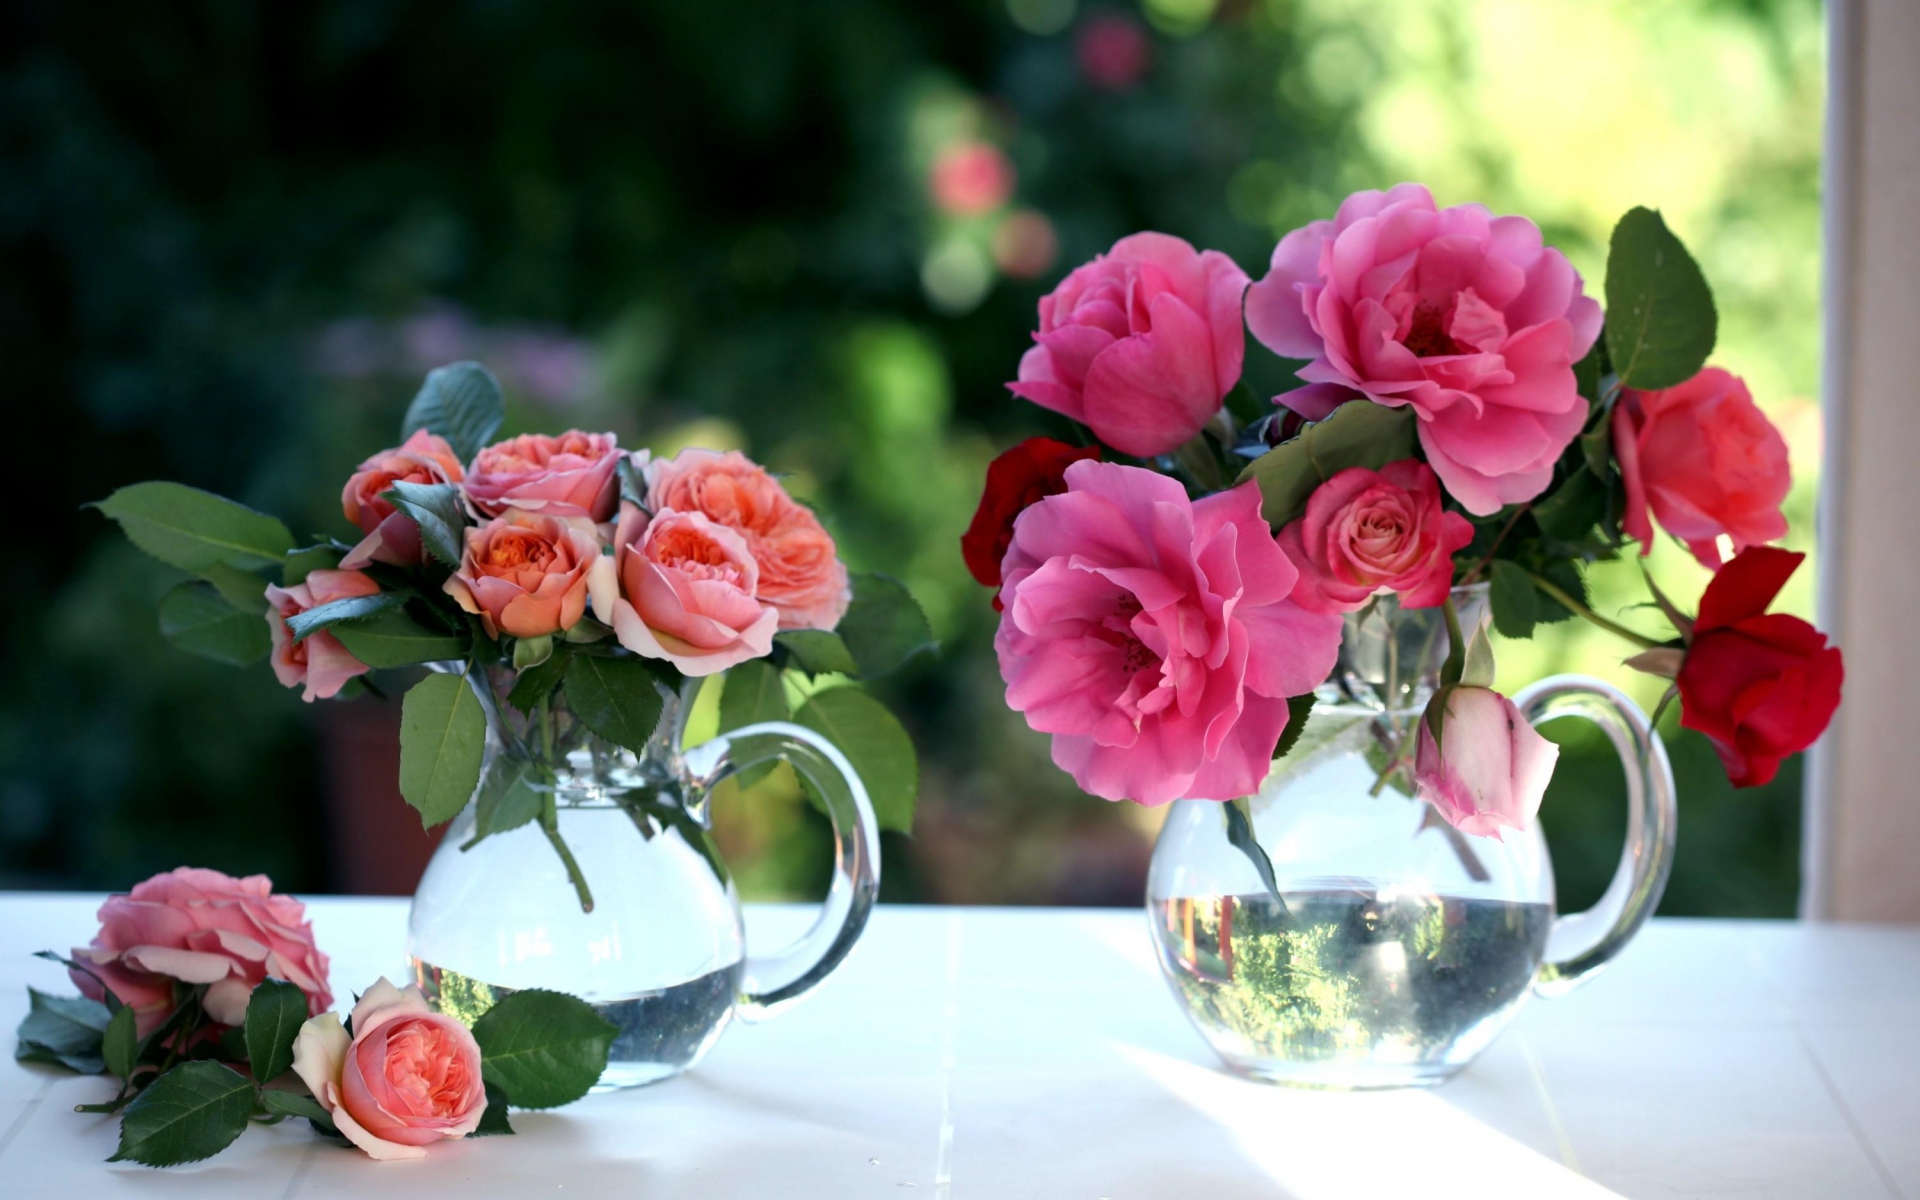 Картинки Розы, цветы, букеты, горшки, окна фото и обои на рабочий стол